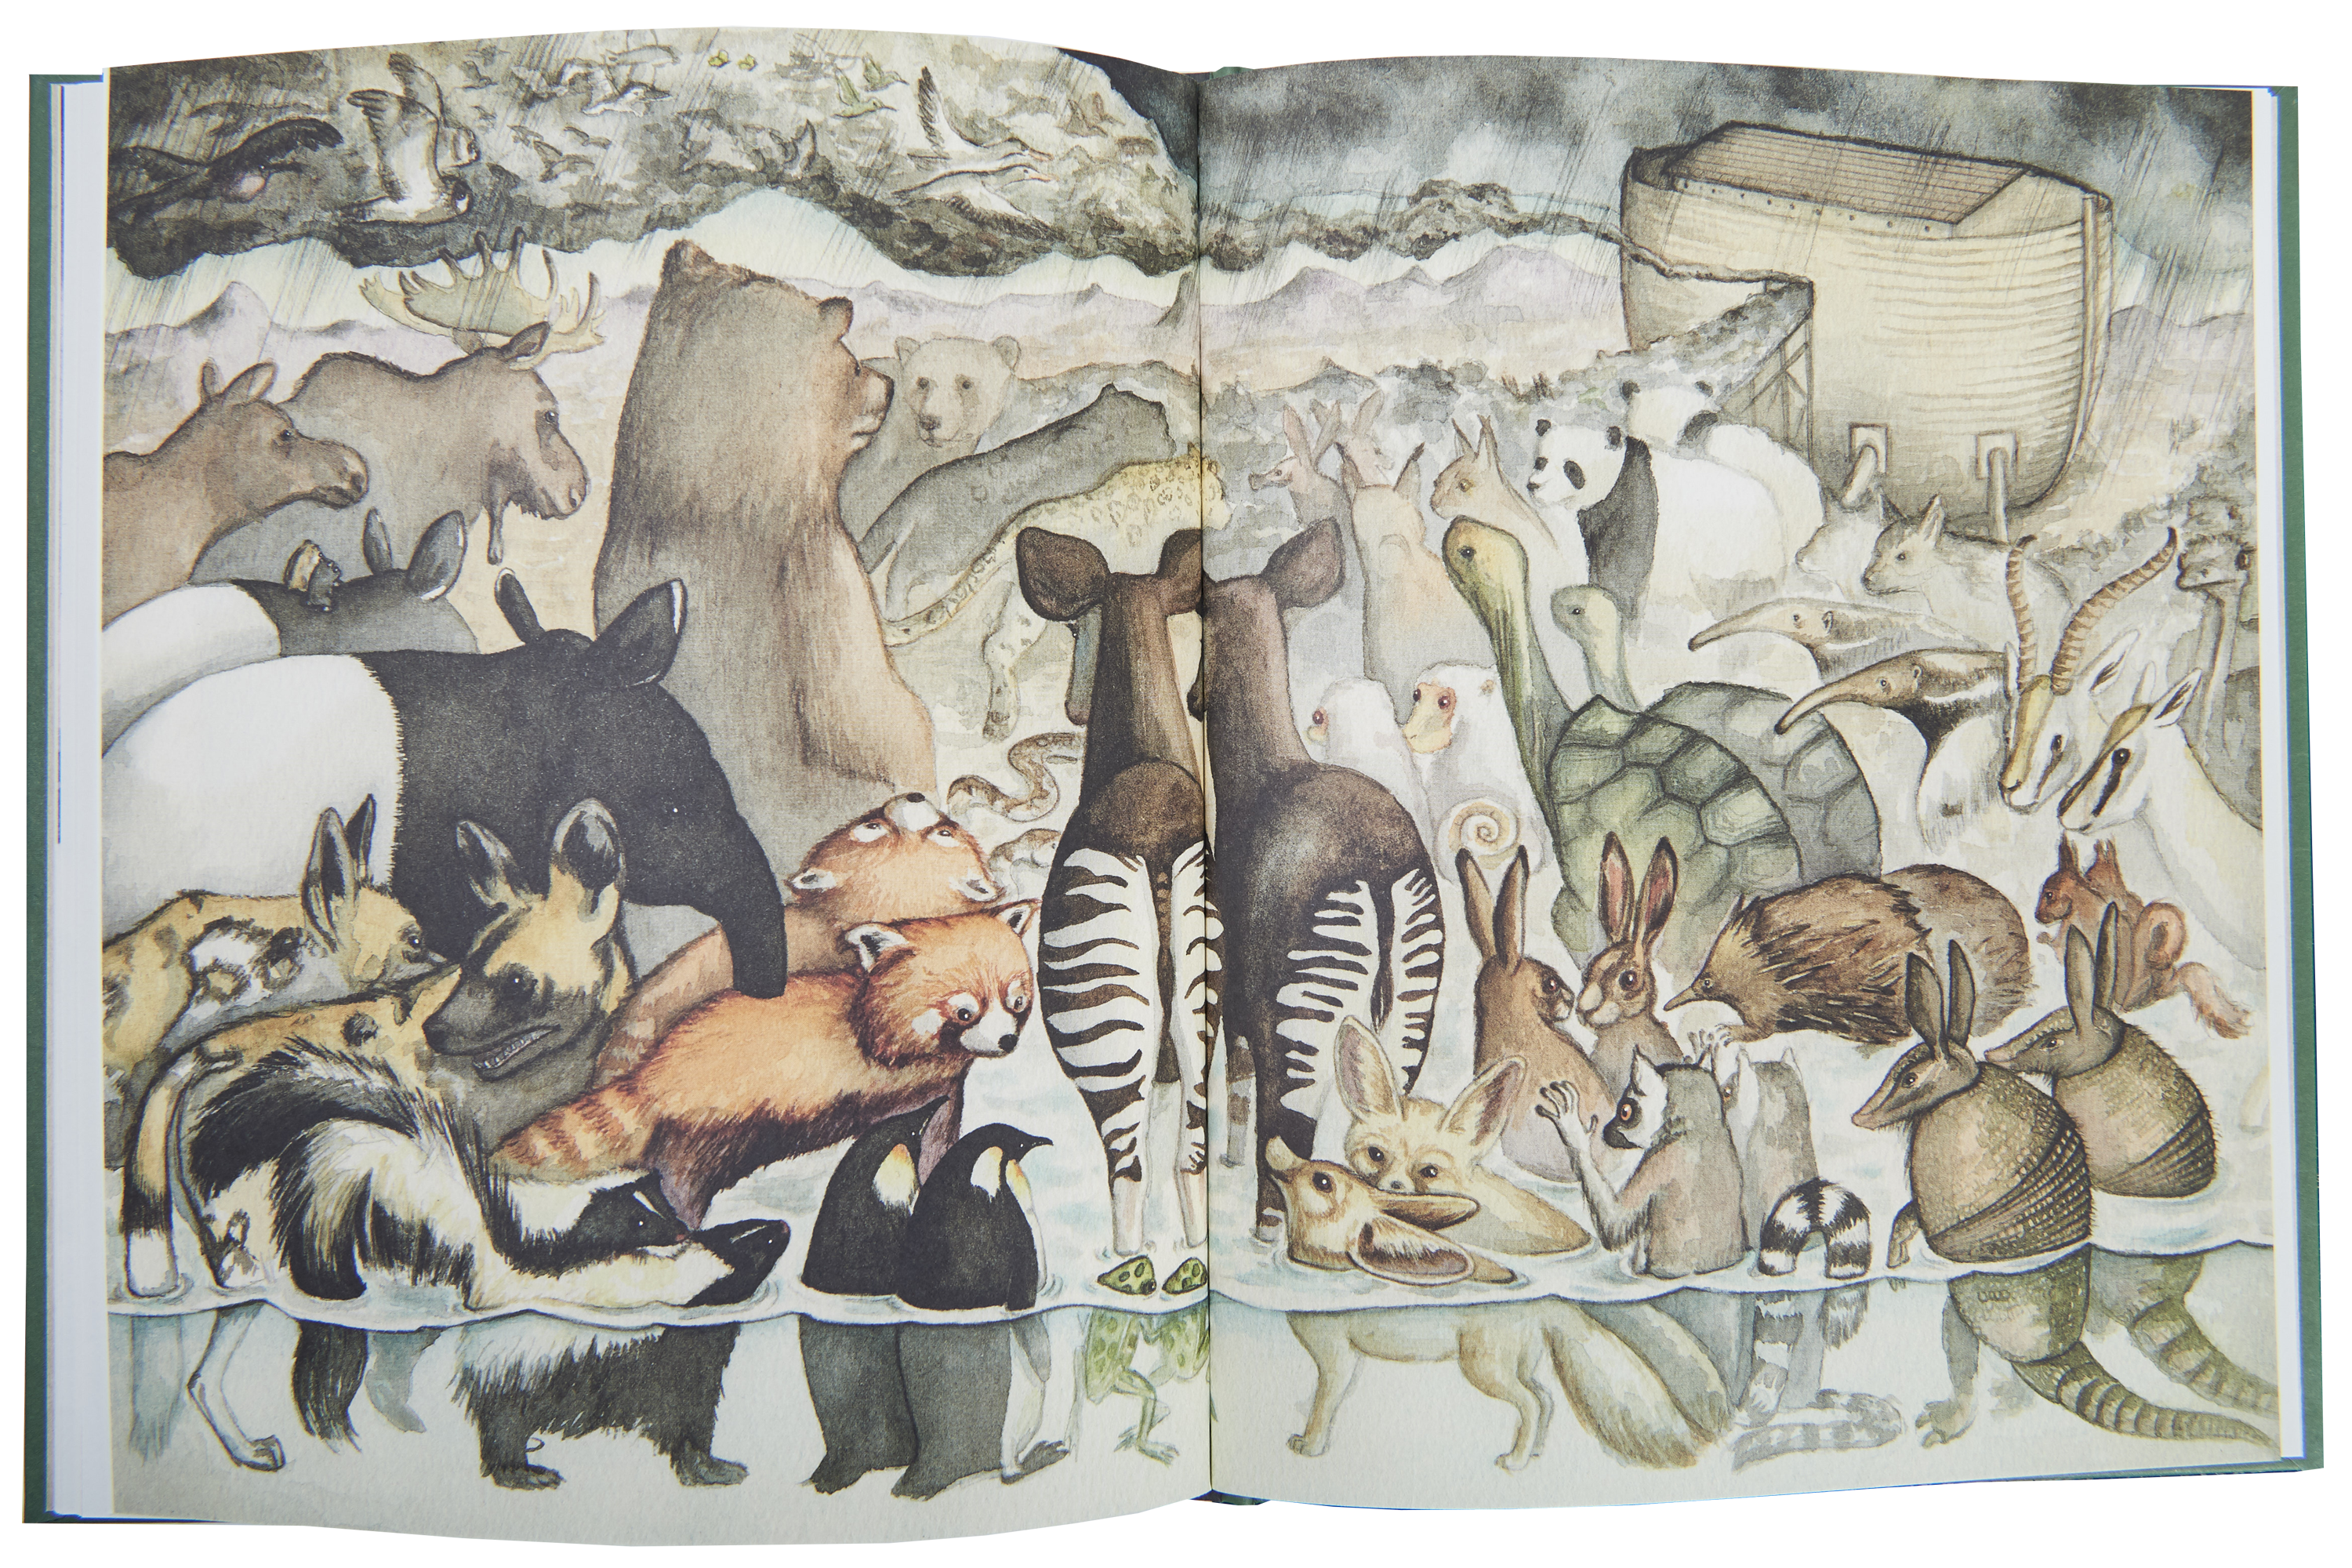 Opslag fra Noa, Illustrationer Kamilla Wichmann.